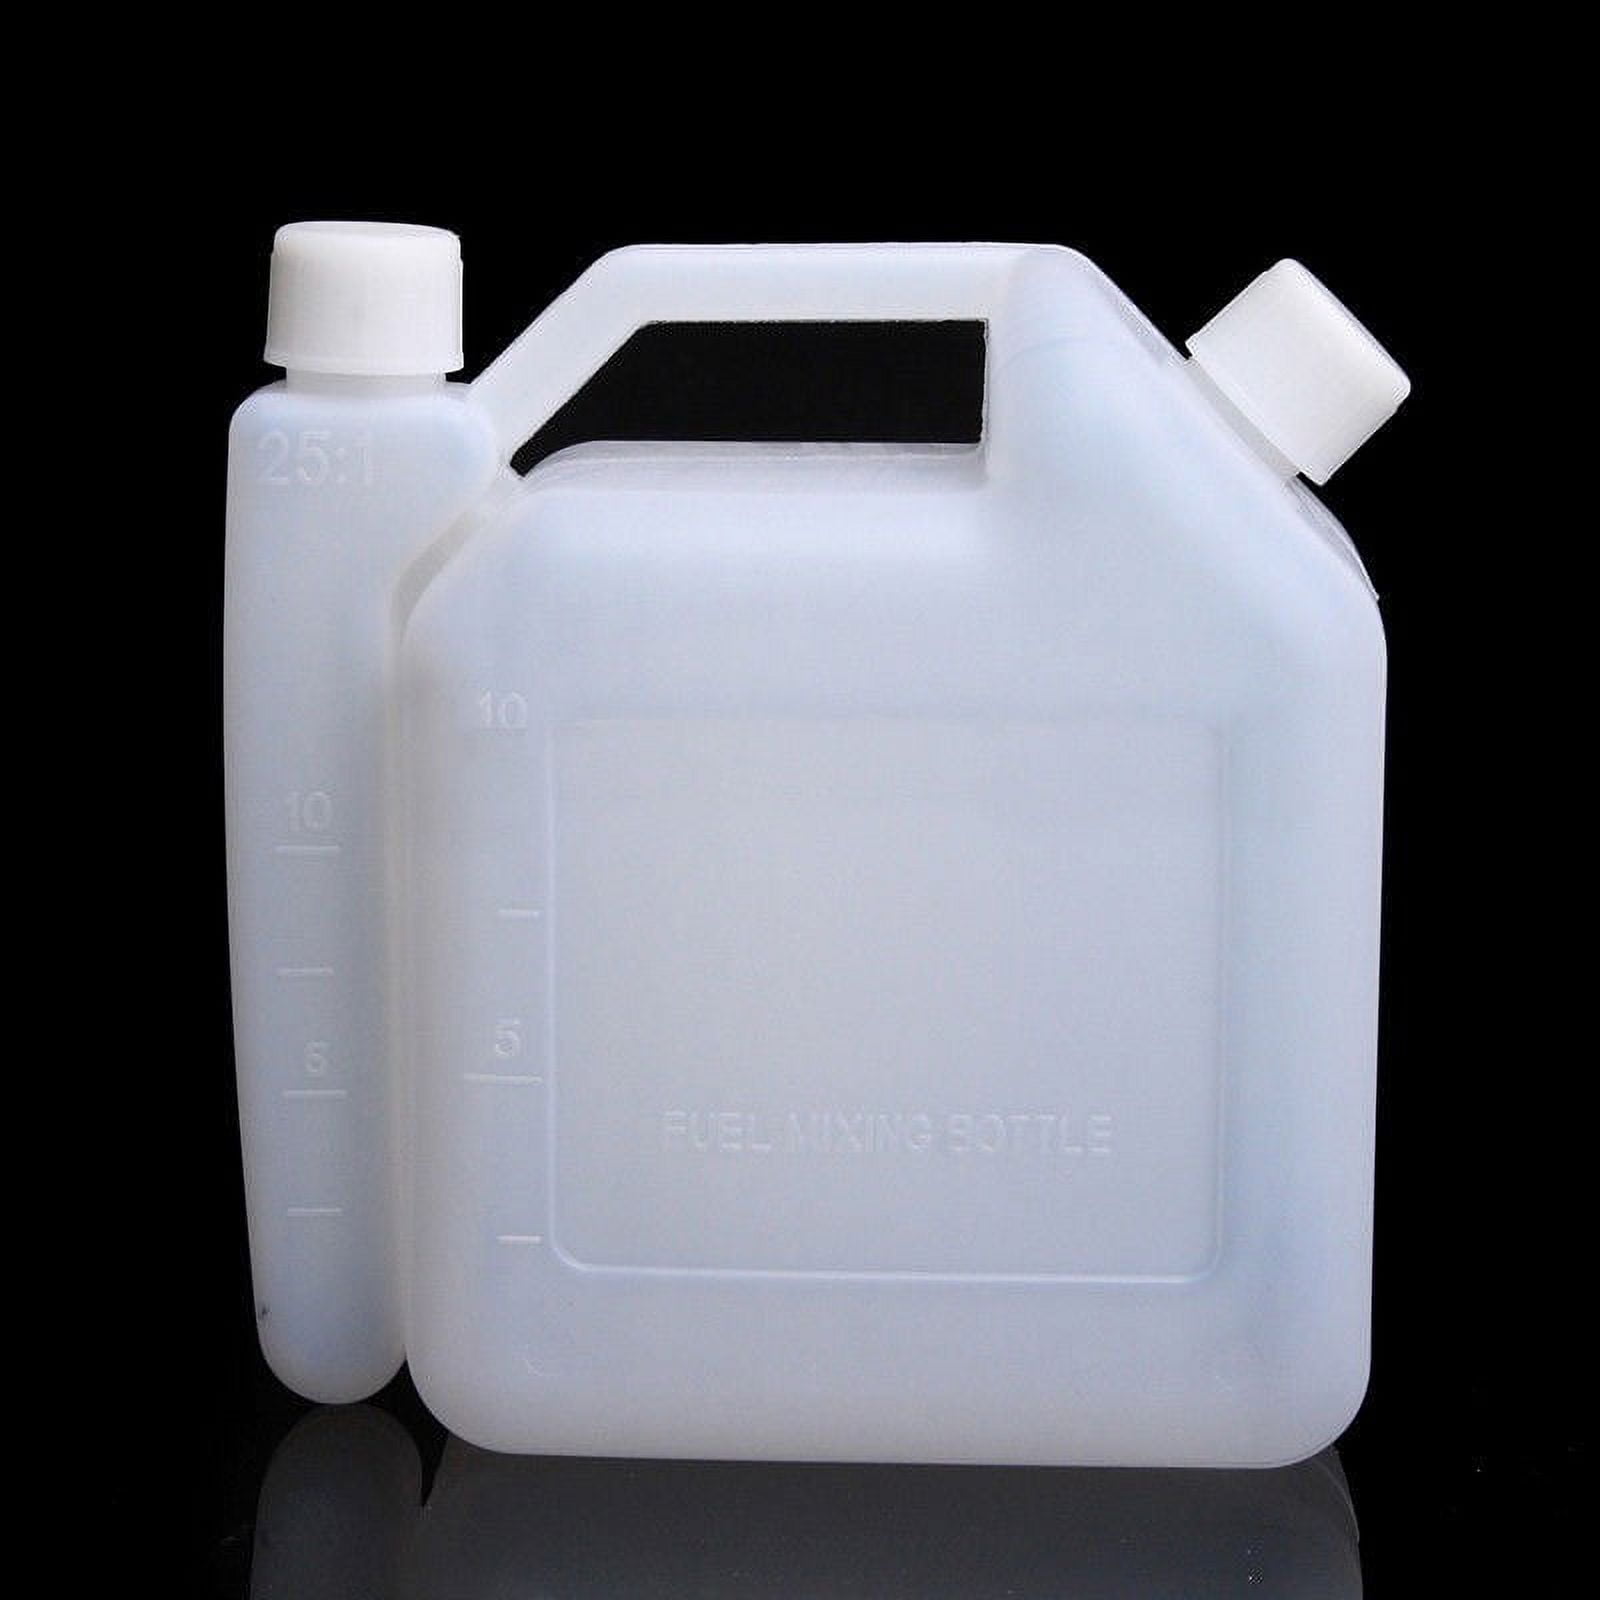 Öl-Mischflasche Behälter Kettensäge 20: 1 25: 1 Strimmer 18x7 5x5